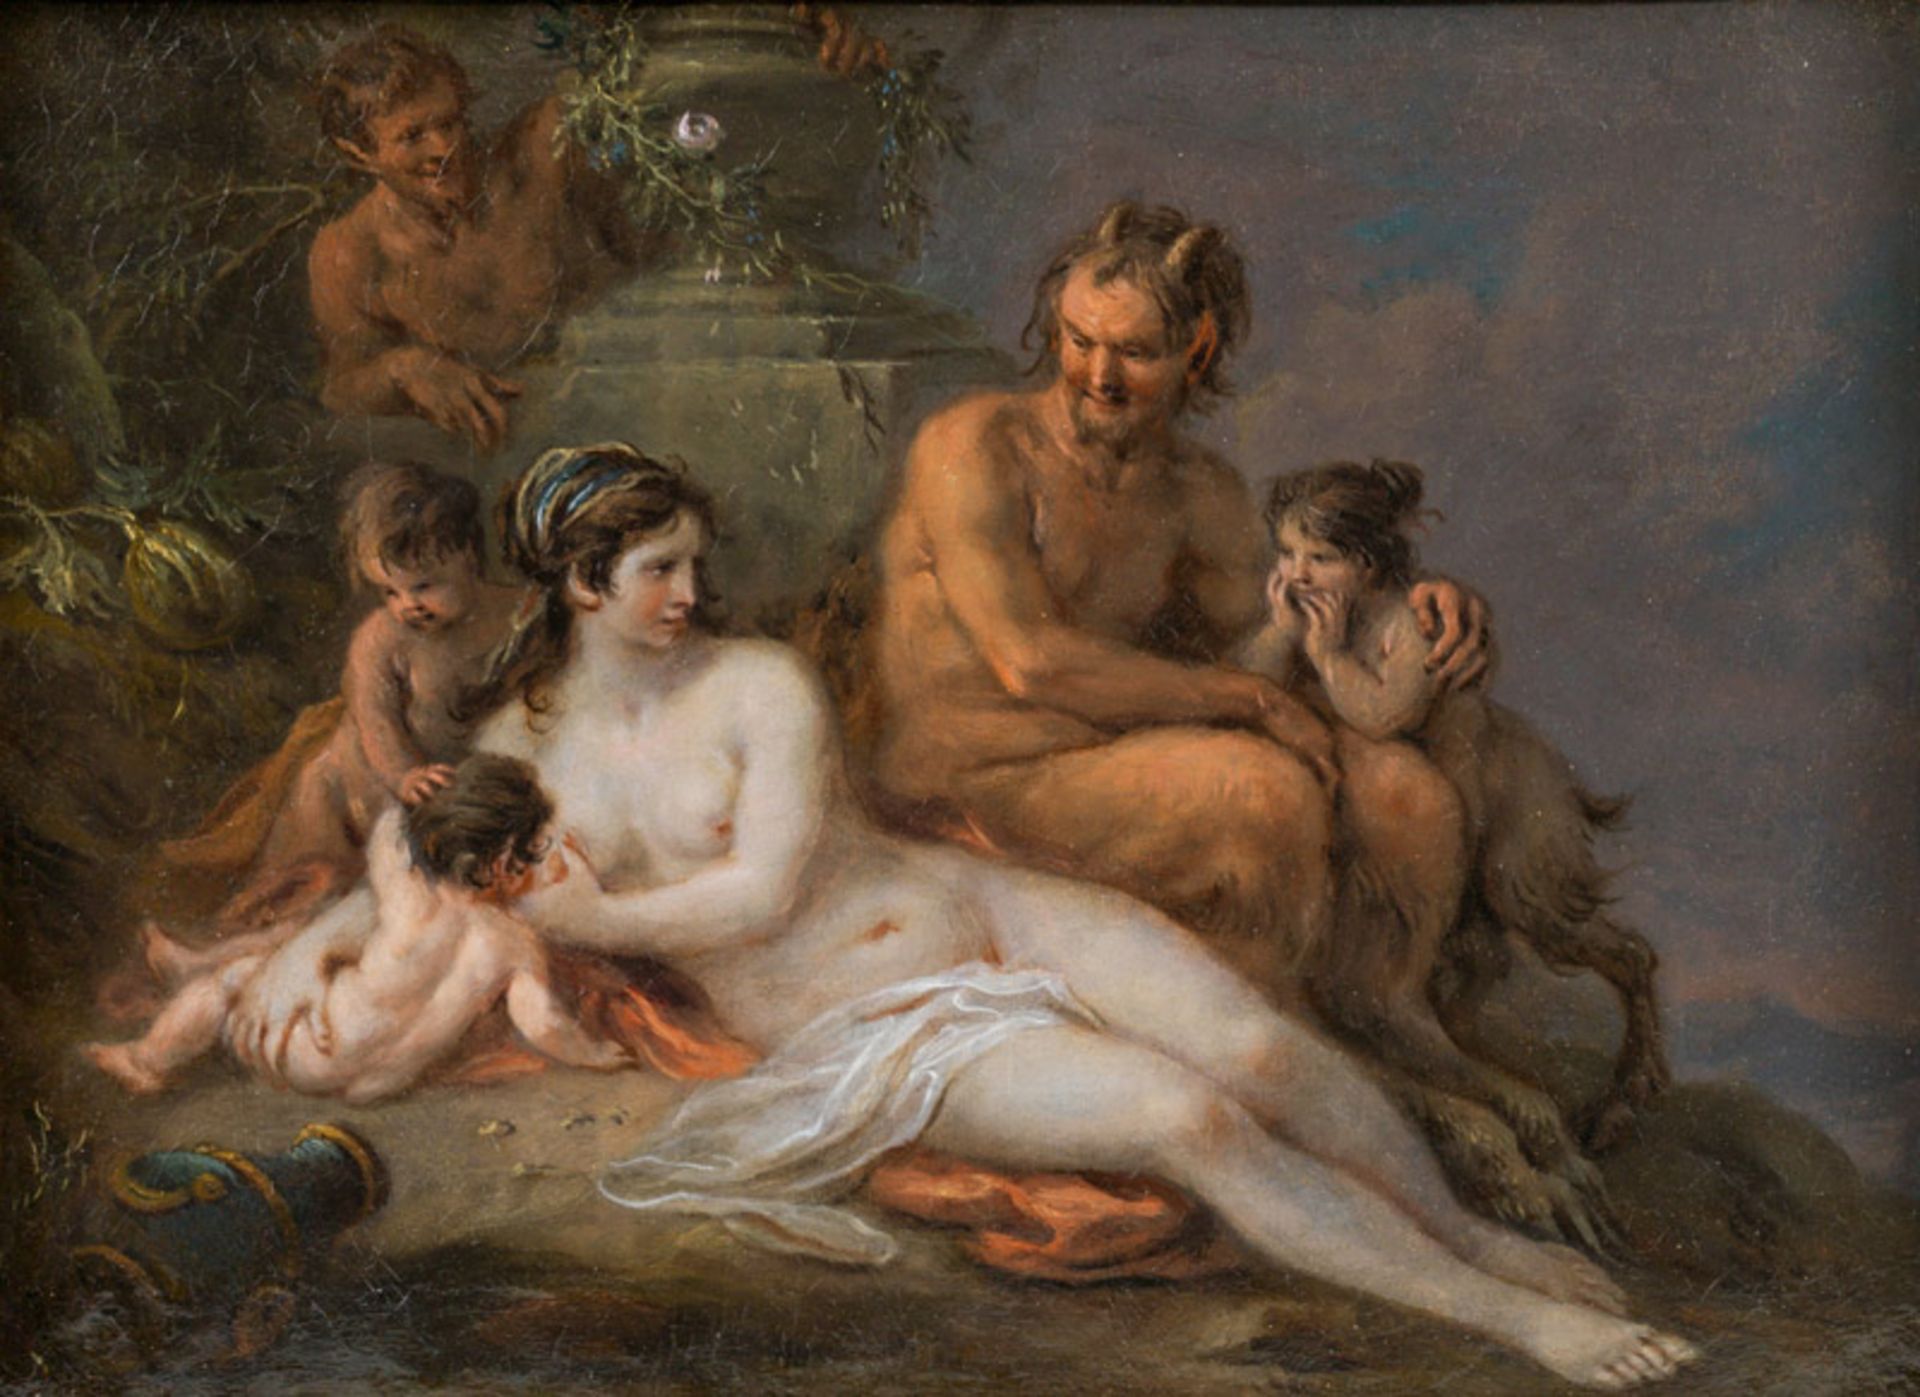 Martin Johann Schmidt, called Kremser SchmidtPan and Nymphe with their children, 1784 oil on